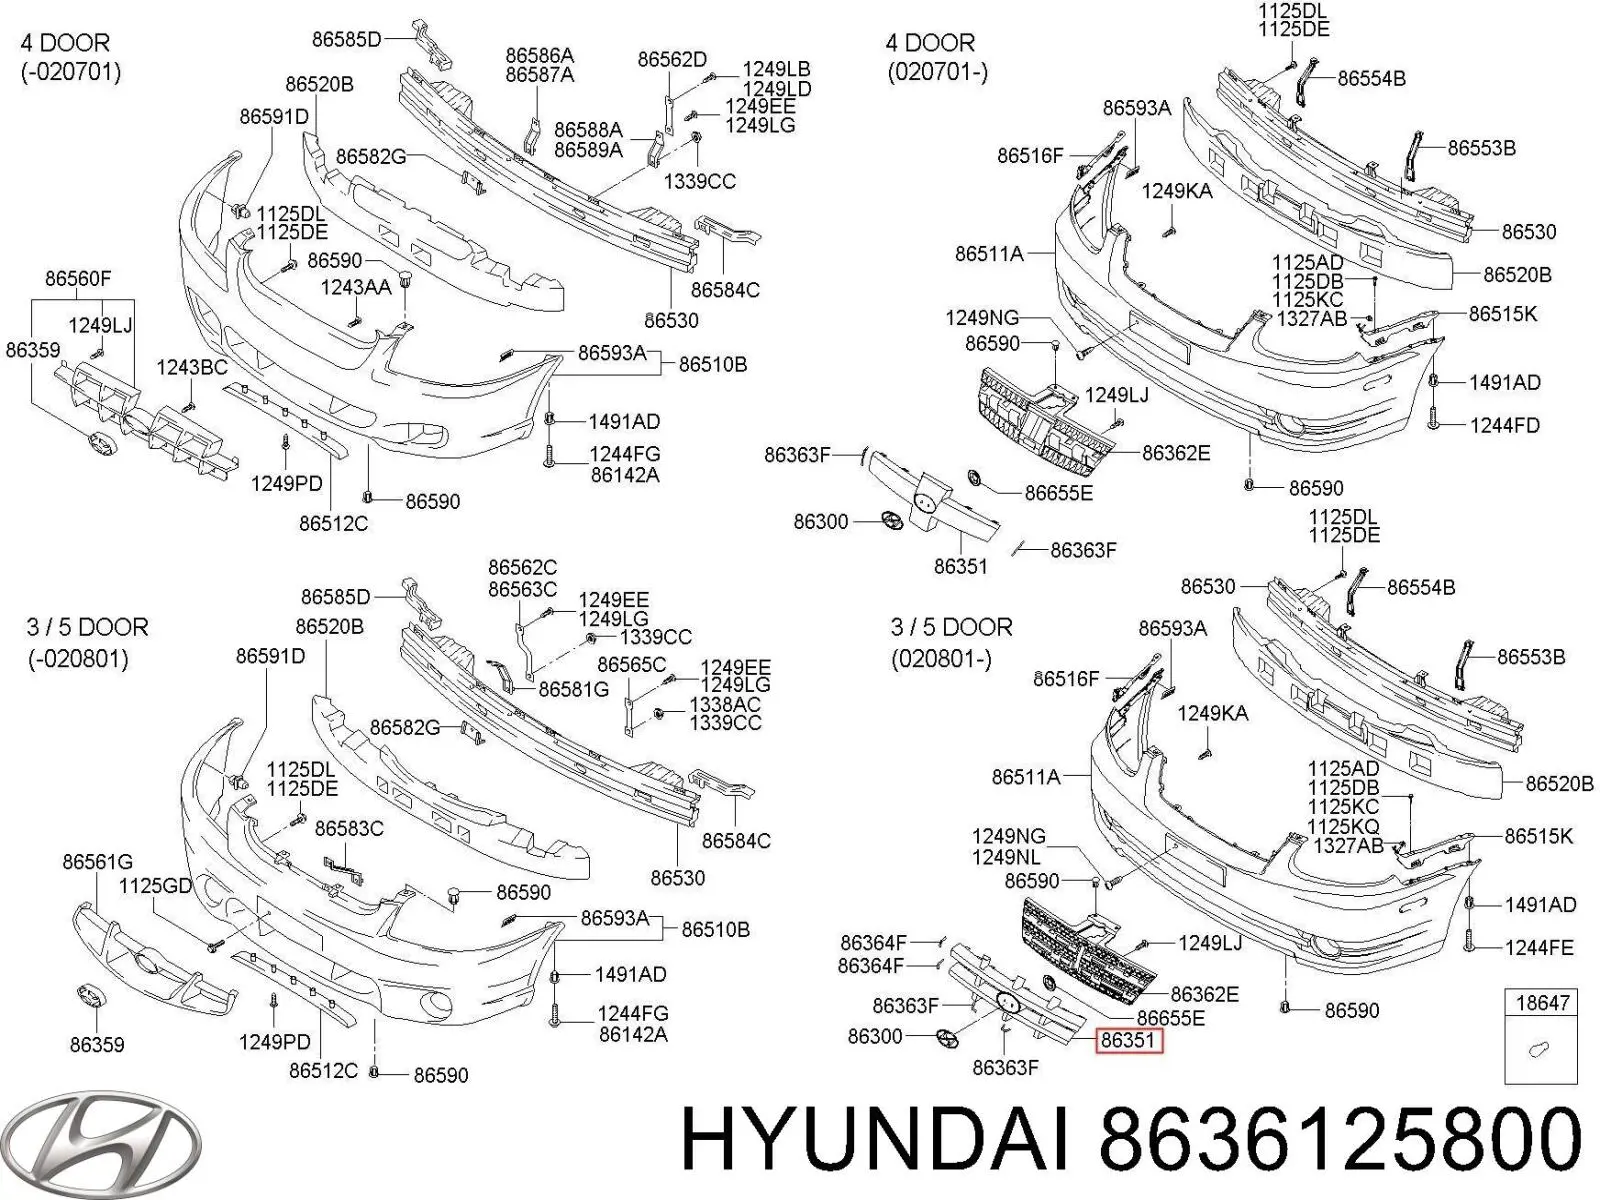 8636125620 Hyundai/Kia parrilla